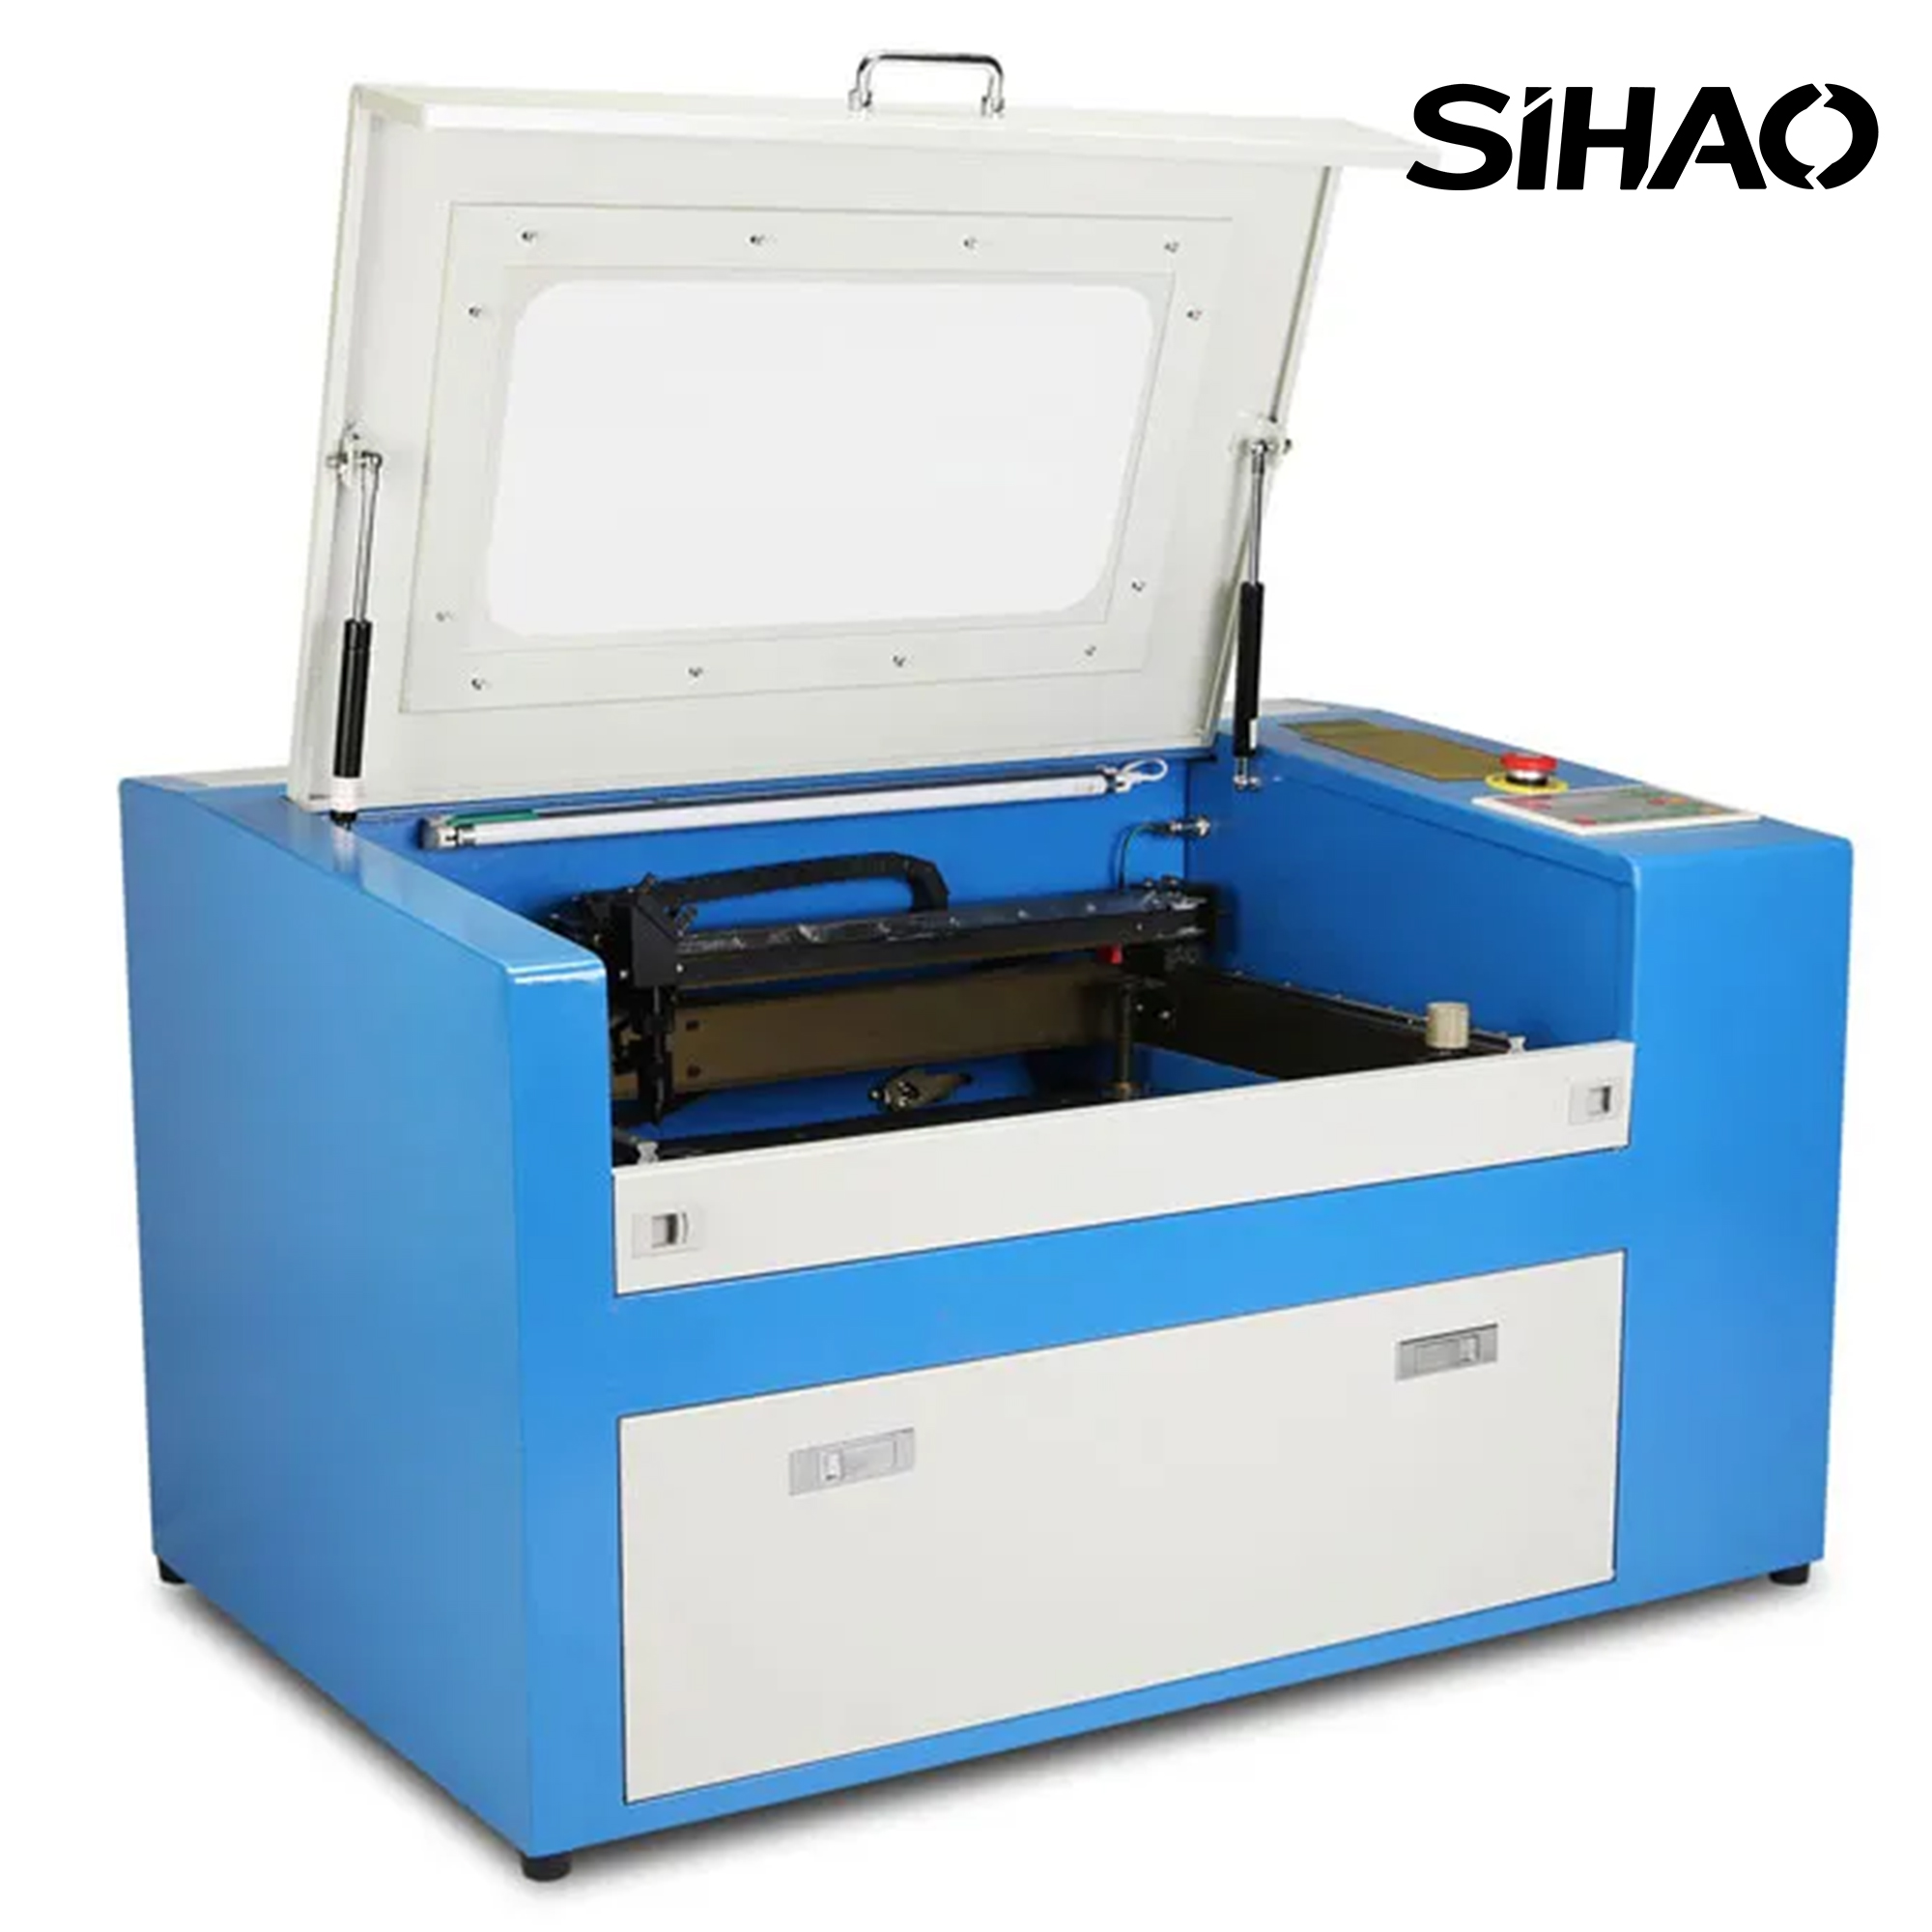 SIHAO SH-3050 50W Laser Engraving Machine